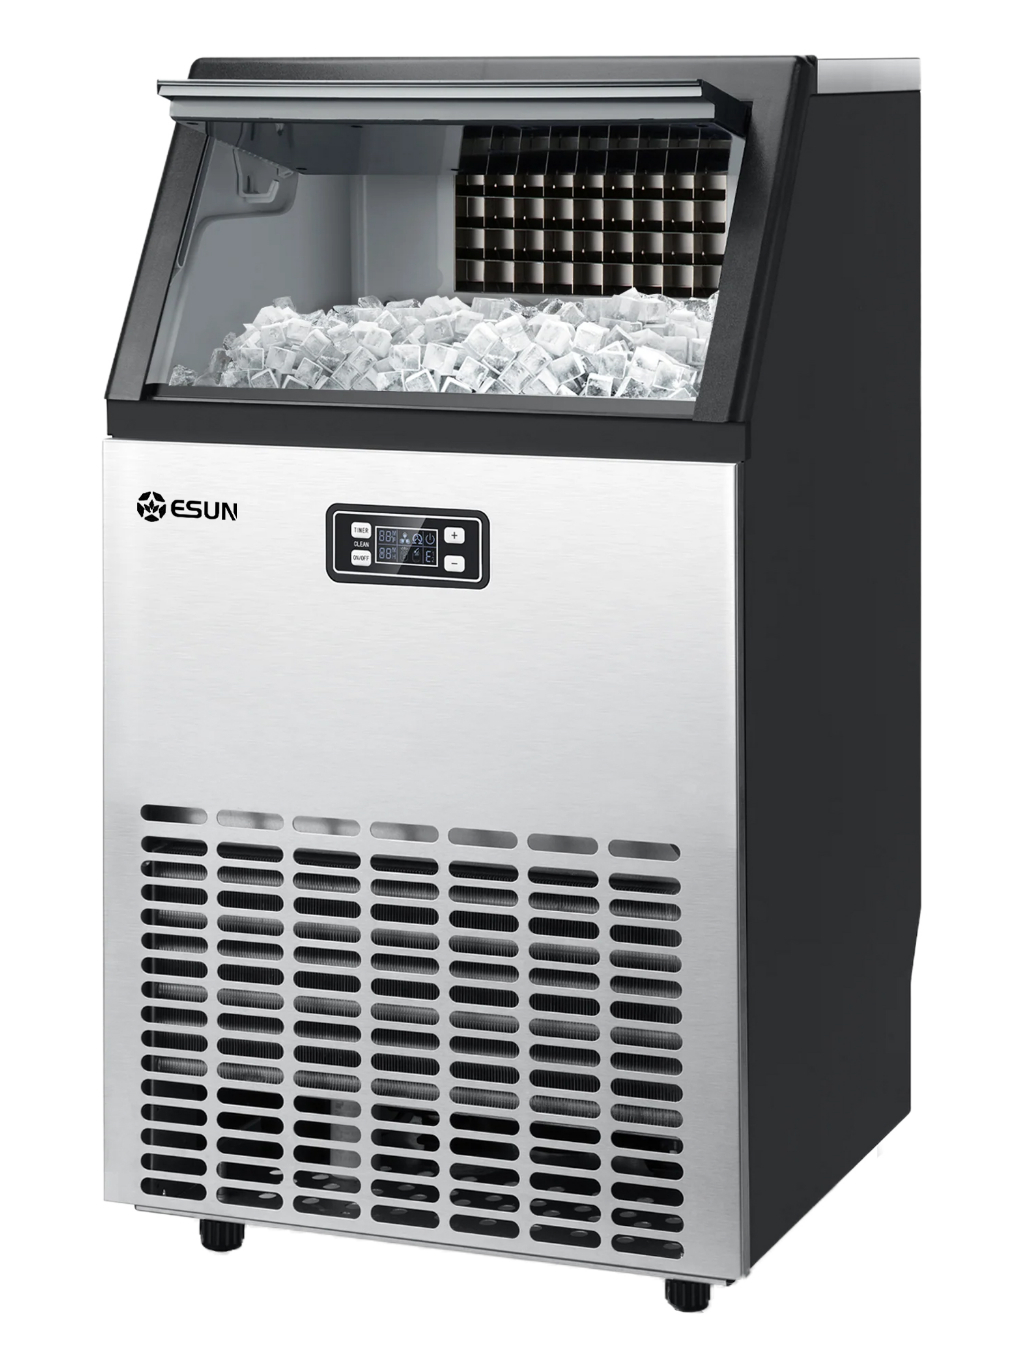 esun-เครื่องทำน้ำแข็ง-สำหรับร้านอาหาร-คาเฟ่-สำนักงาน-ขนาด-45kg-ผลิตน้ำแข็งก้อนเหลี่ยม-เหมาะสำหรับร้านกาแฟขนาดกลาง